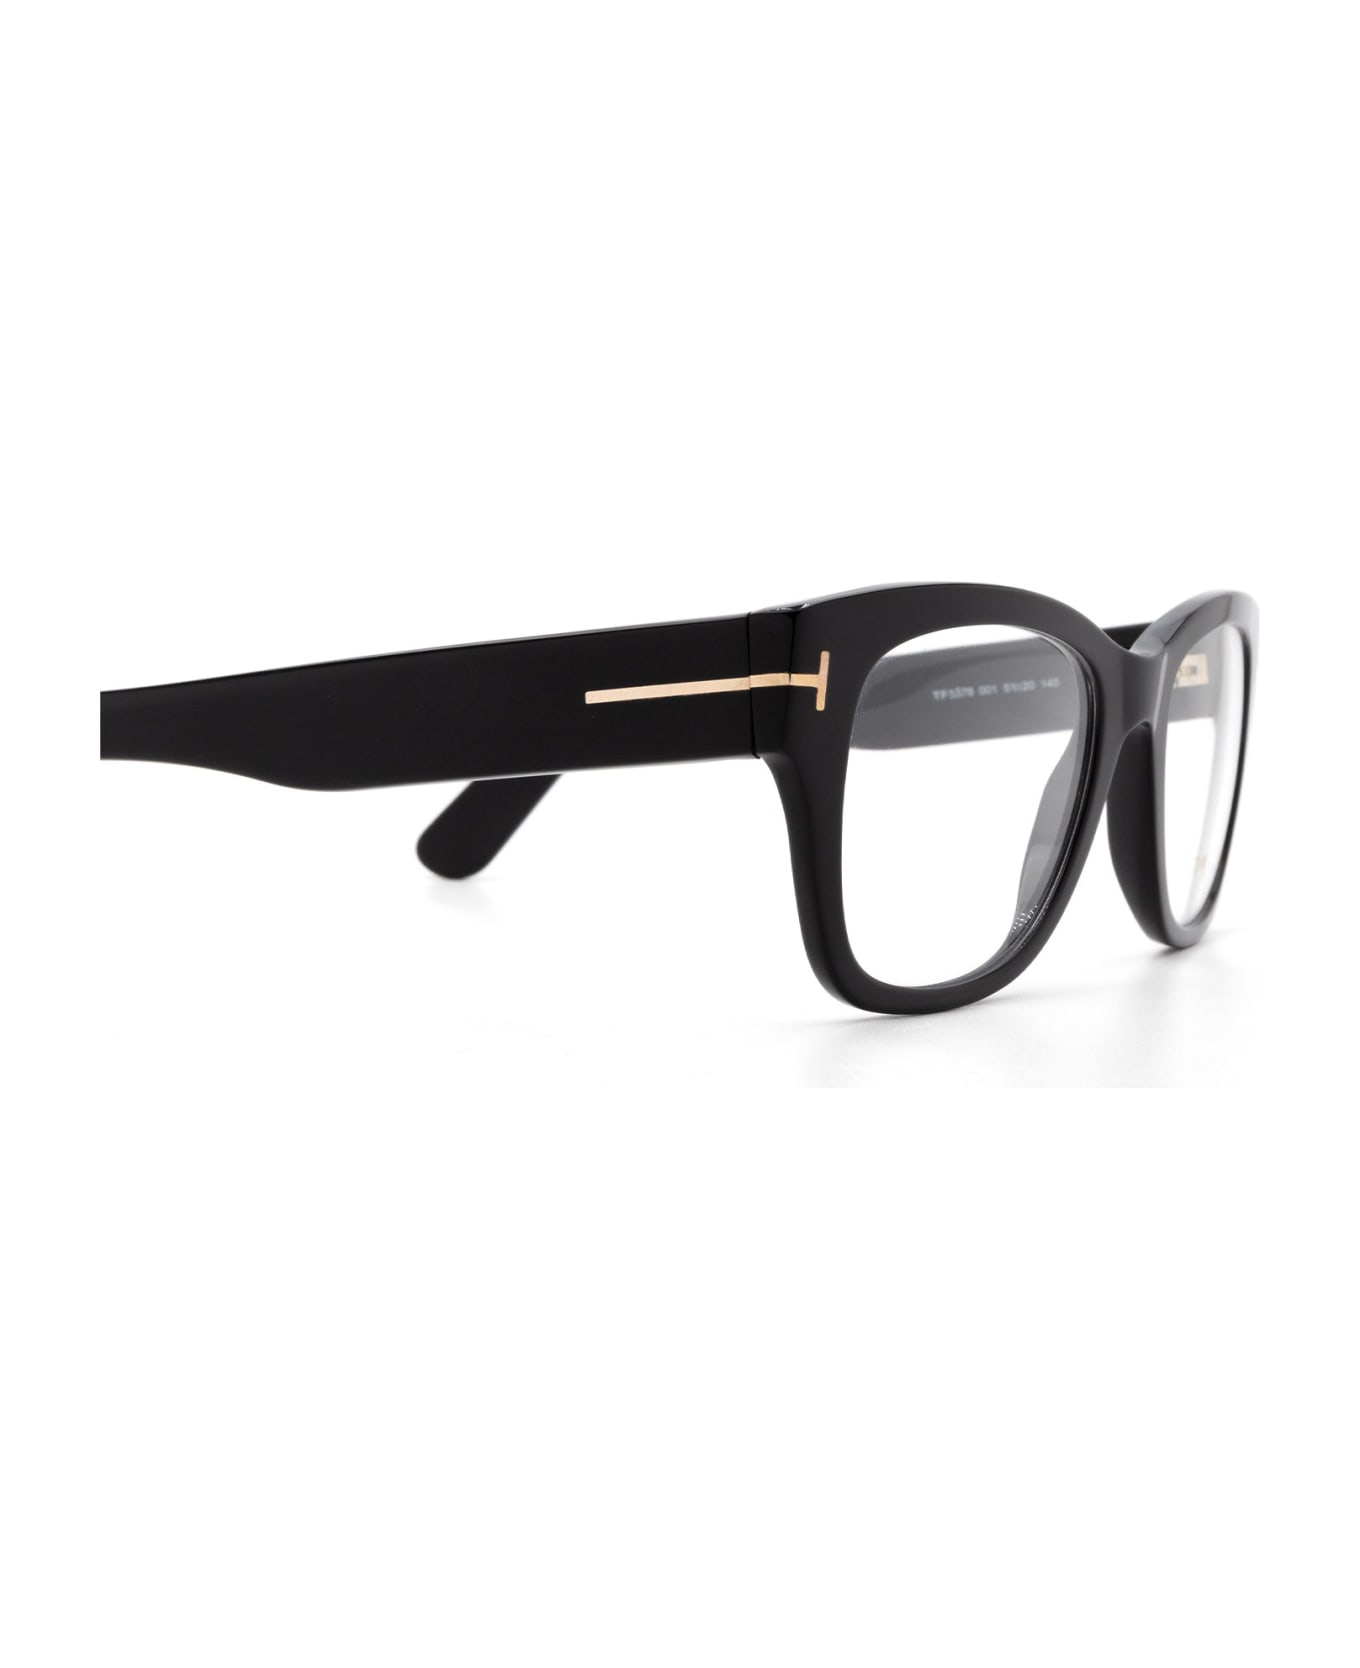 Tom Ford Eyewear Ft5379 001 Glasses - 001